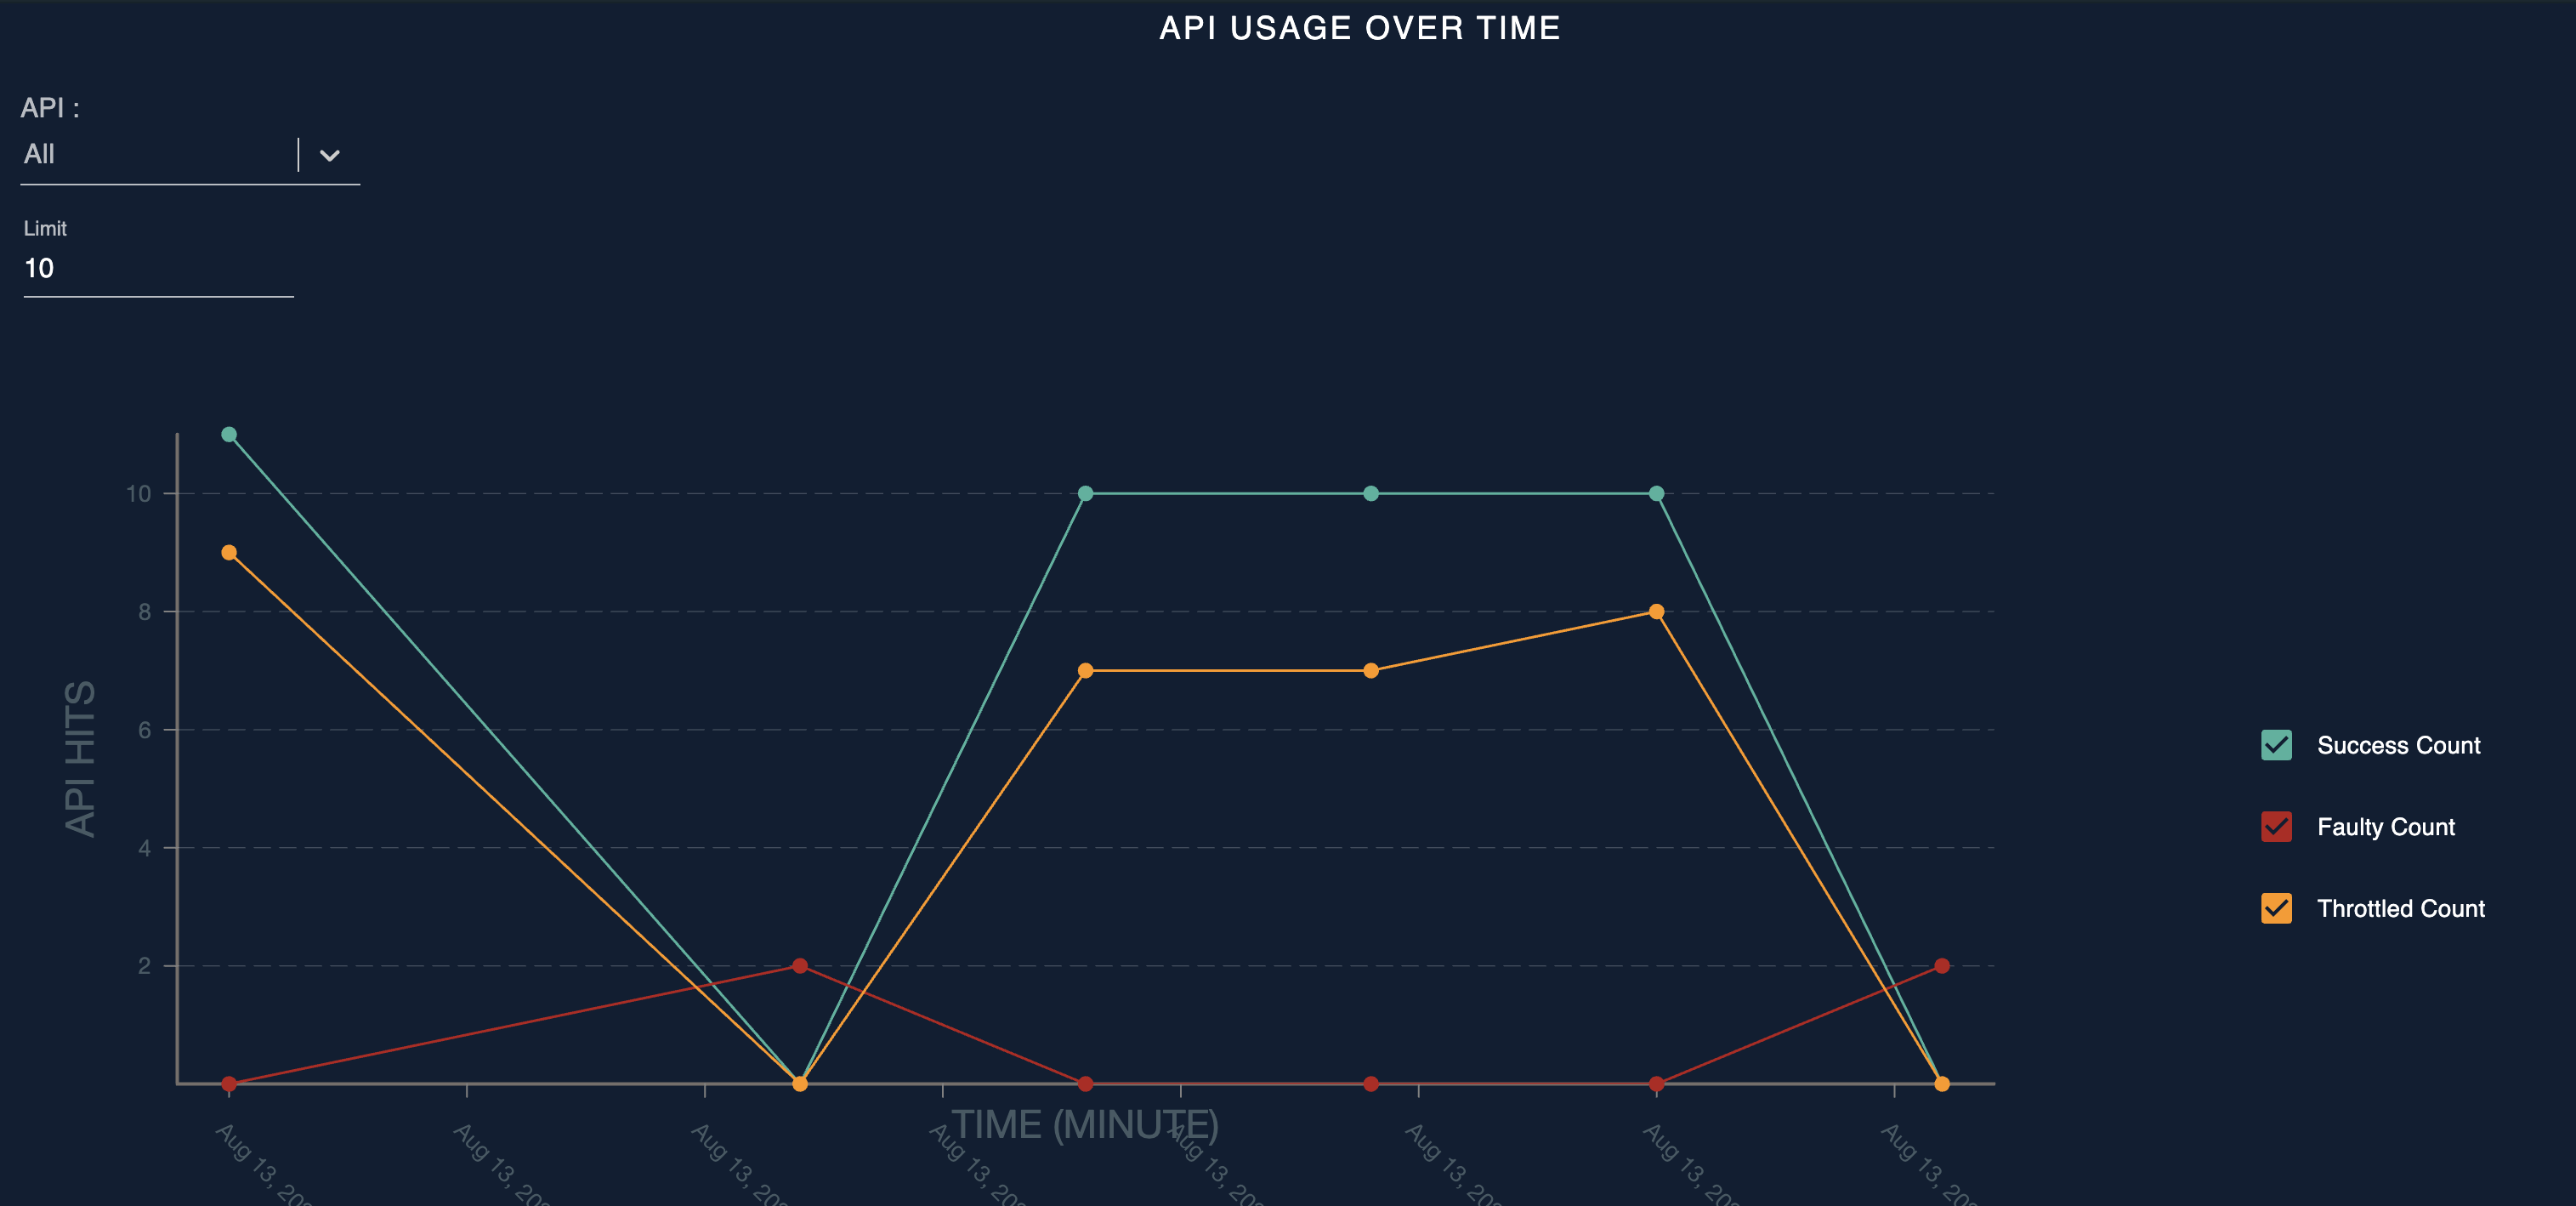 API usage over time